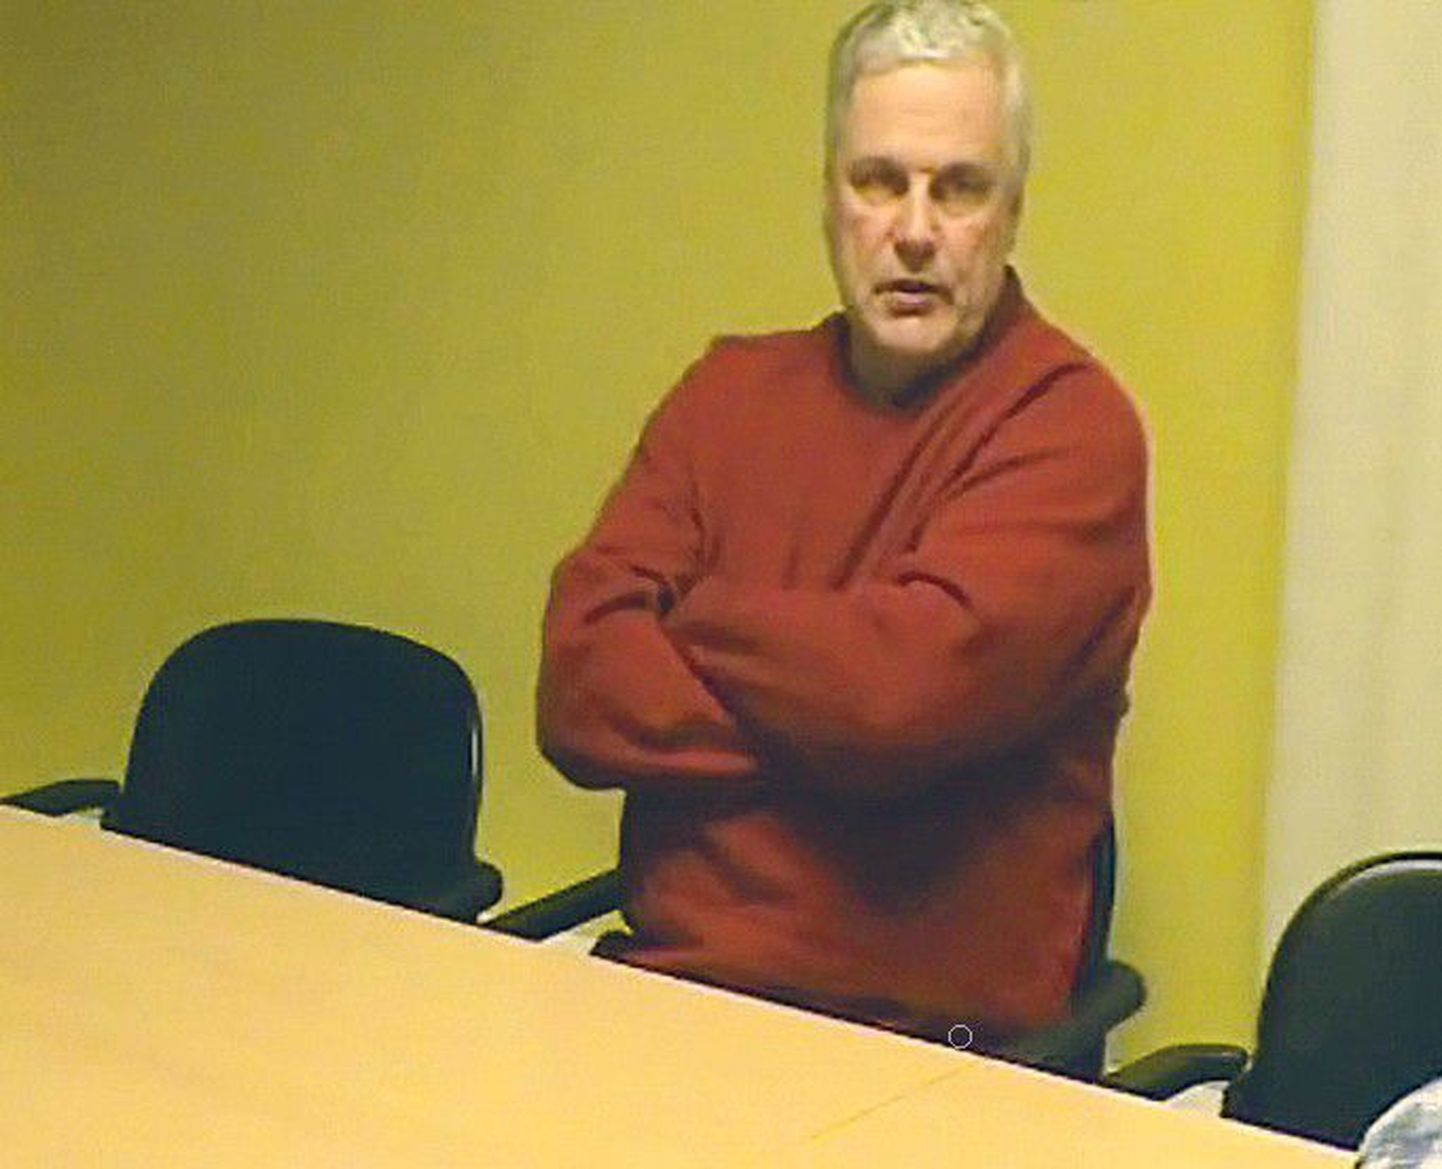 Вчера прокуратура обнародовала видеозаписи, на которых Херман Симм признает себя виновным в государственной измене.